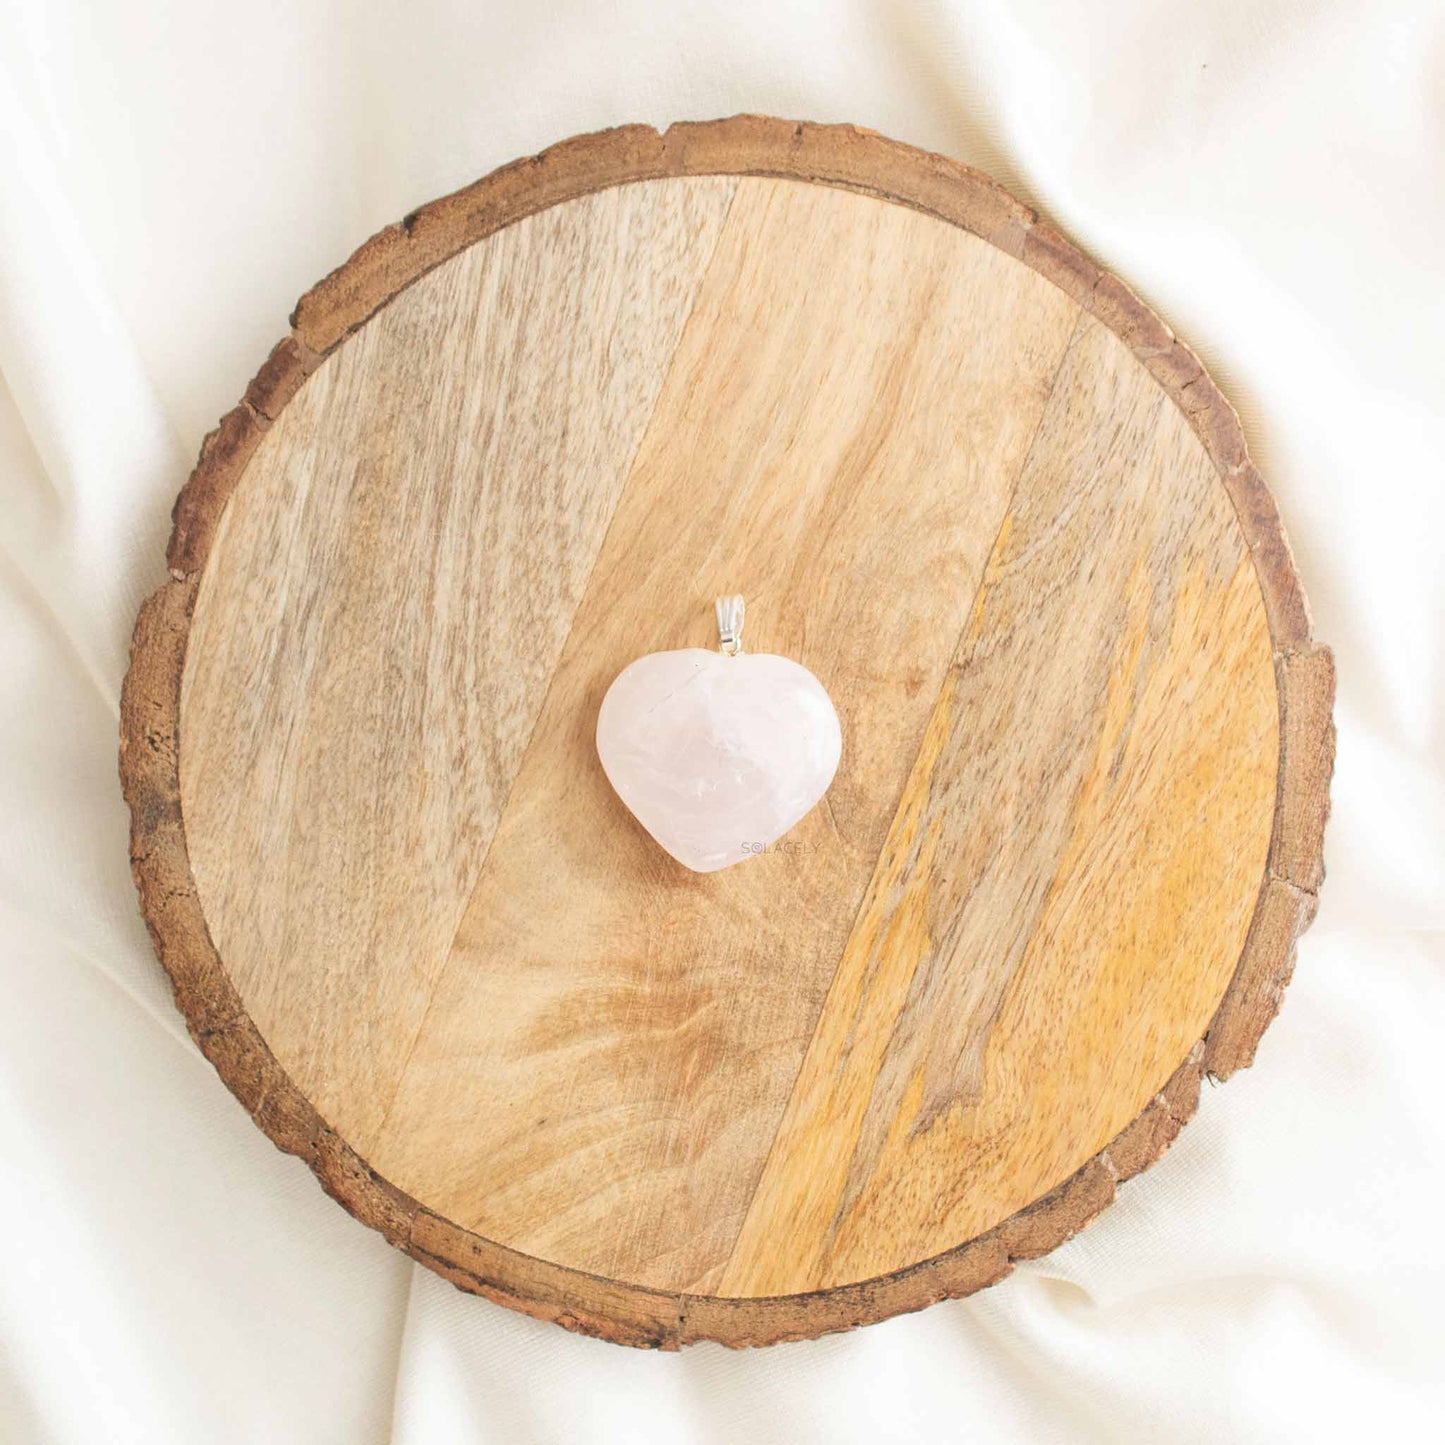 Rose Quartz Heart Pendant for Self-Love